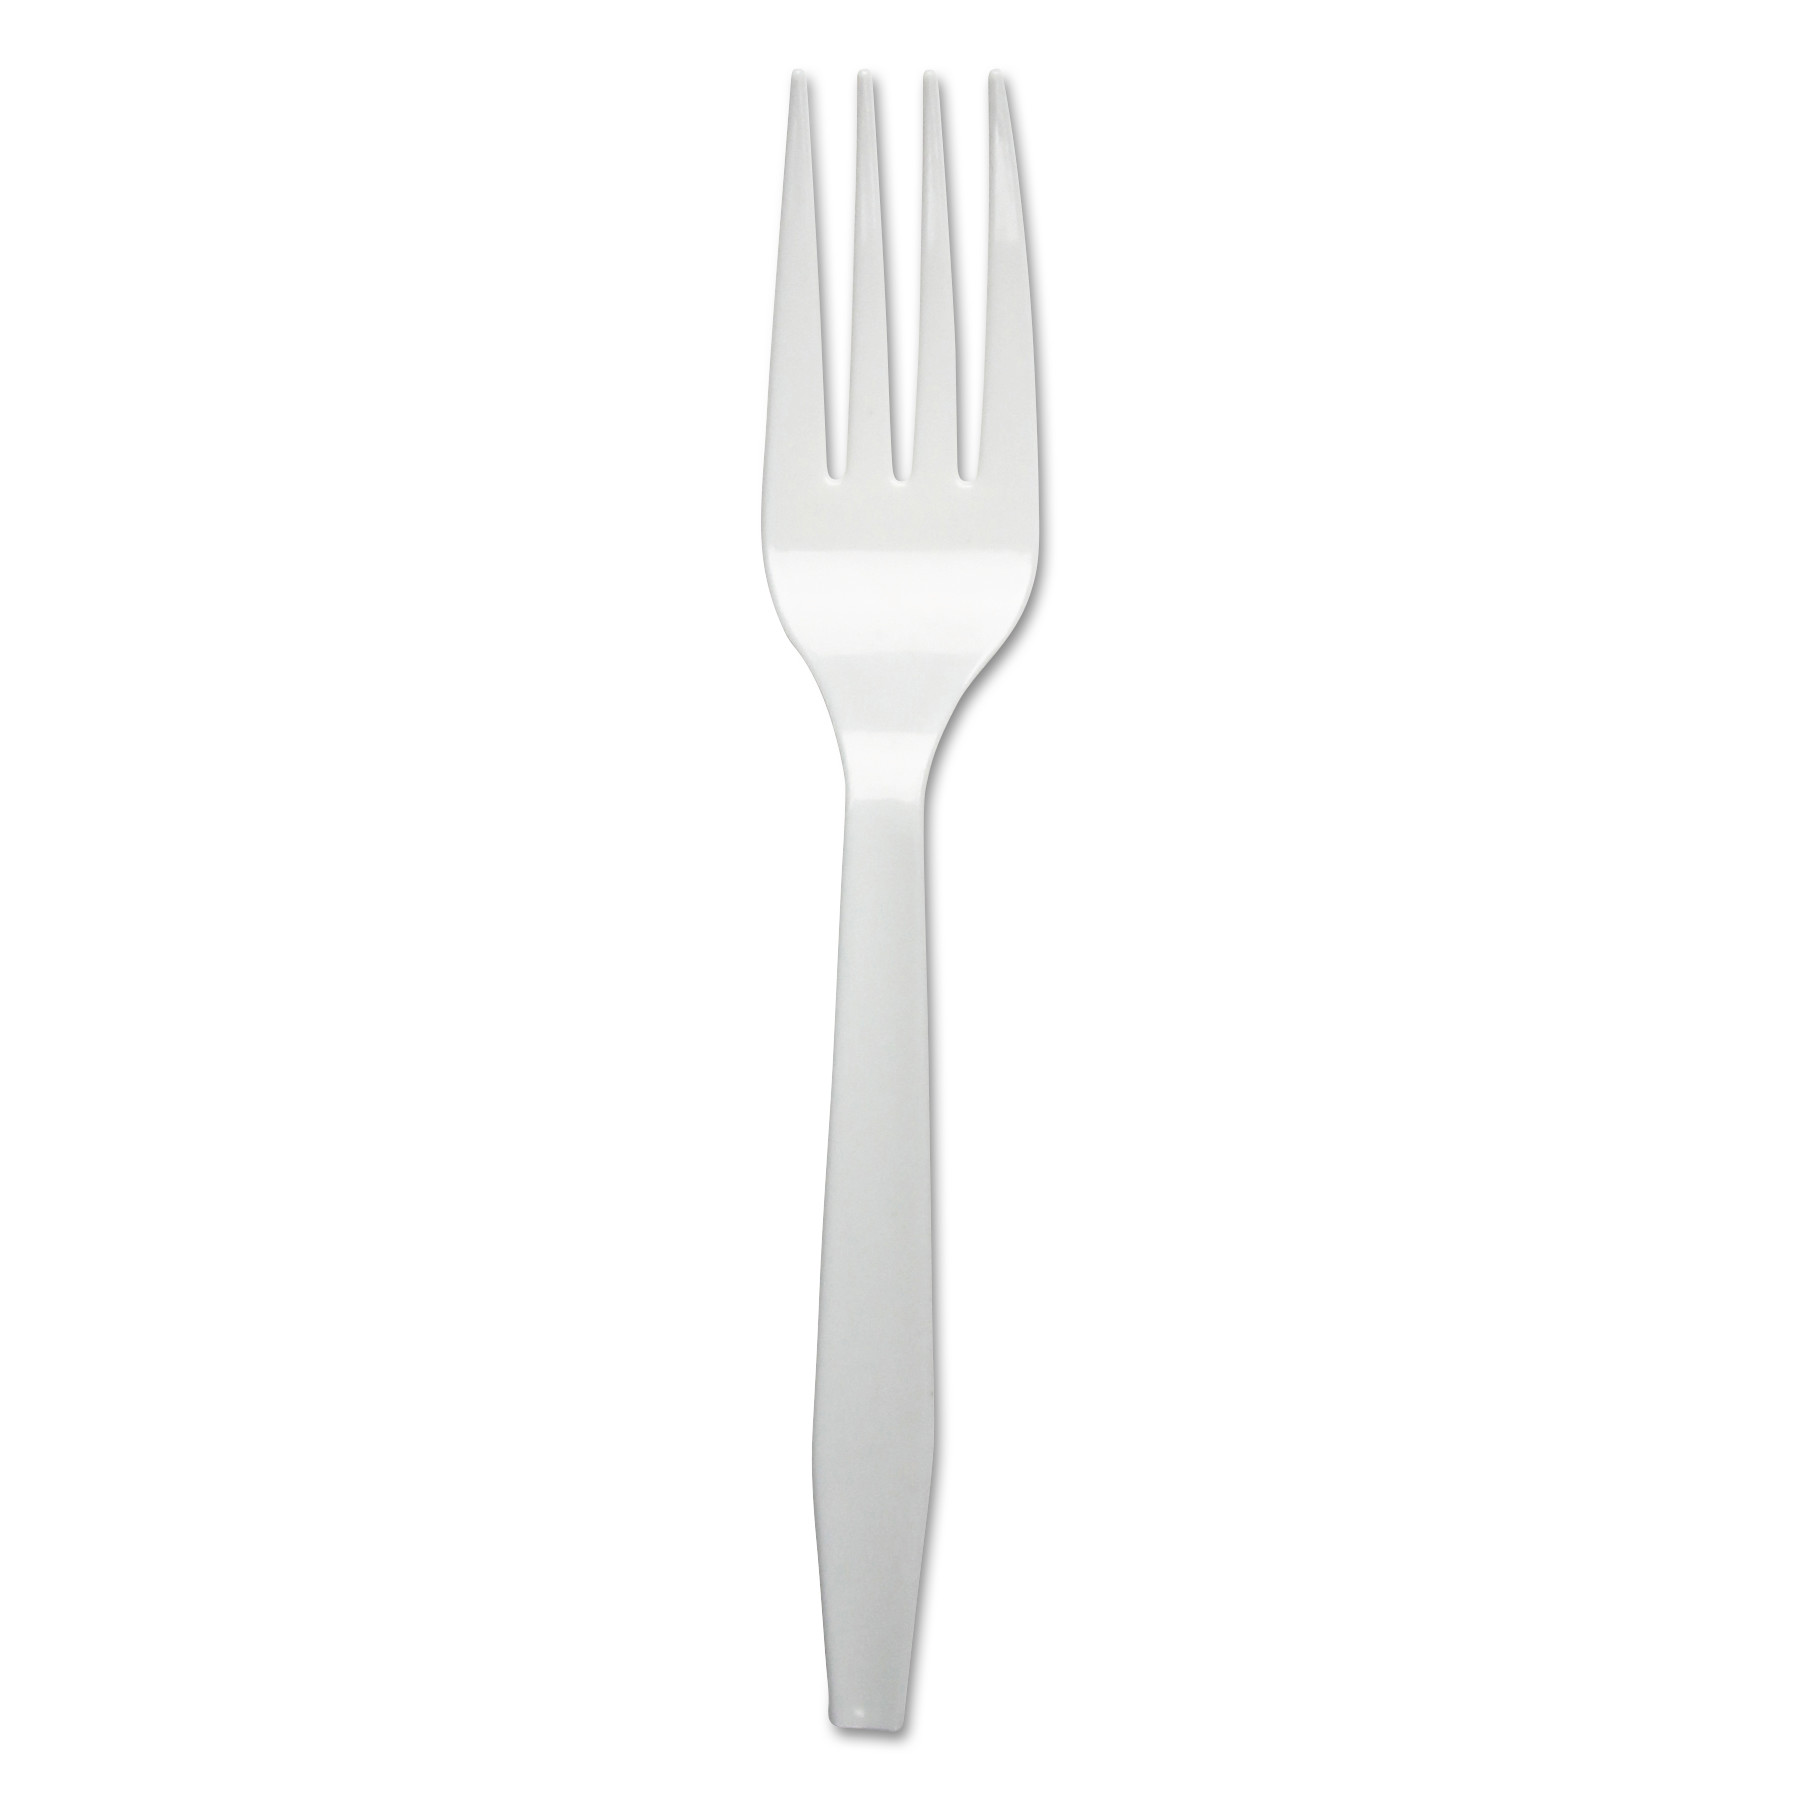  Boardwalk BWKFORKMWPS Mediumweight Polystyrene Cutlery, Fork, White, 1000/Carton (BWKFORKMWPS) 